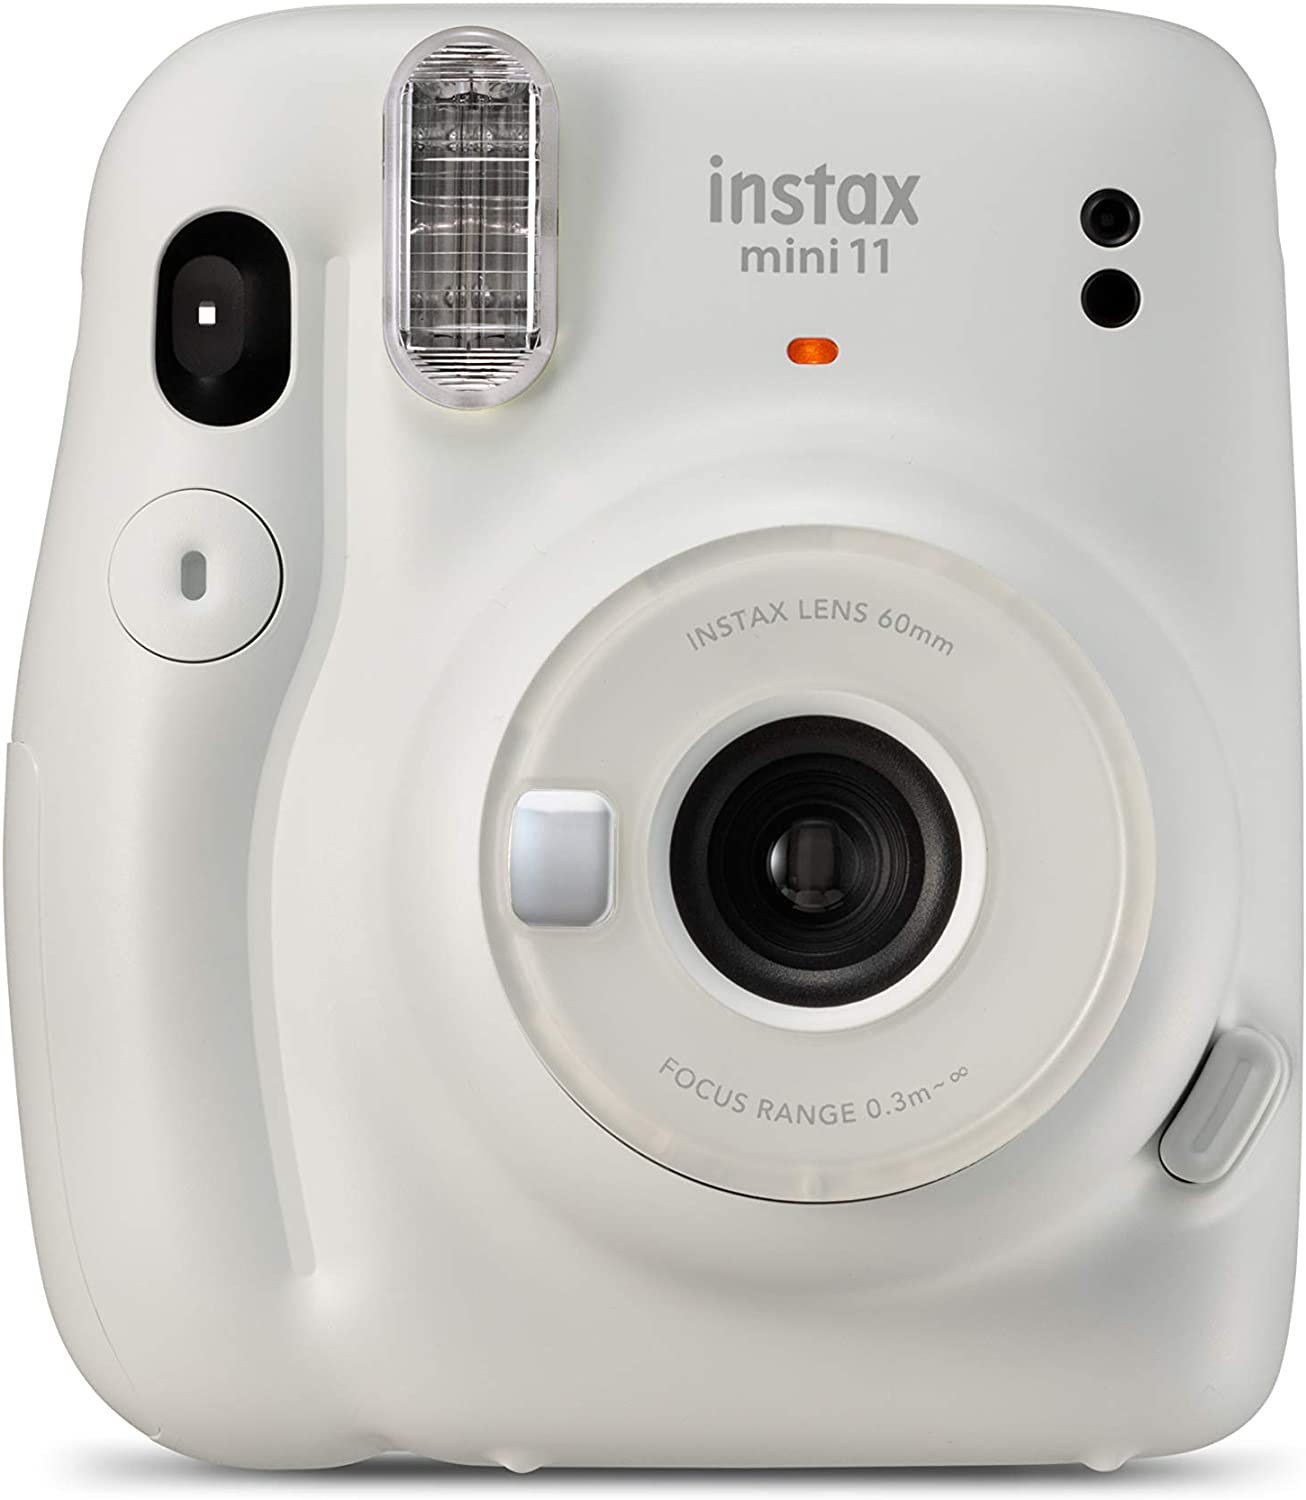 Fujifilm Instax Mini 11 Appareil photo instantané blanc glacé - Taille d'image 62 x 46 mm - Flash automatique - Mini miroir pour selfies - Dragonne et 2 boutons d'obturation différents